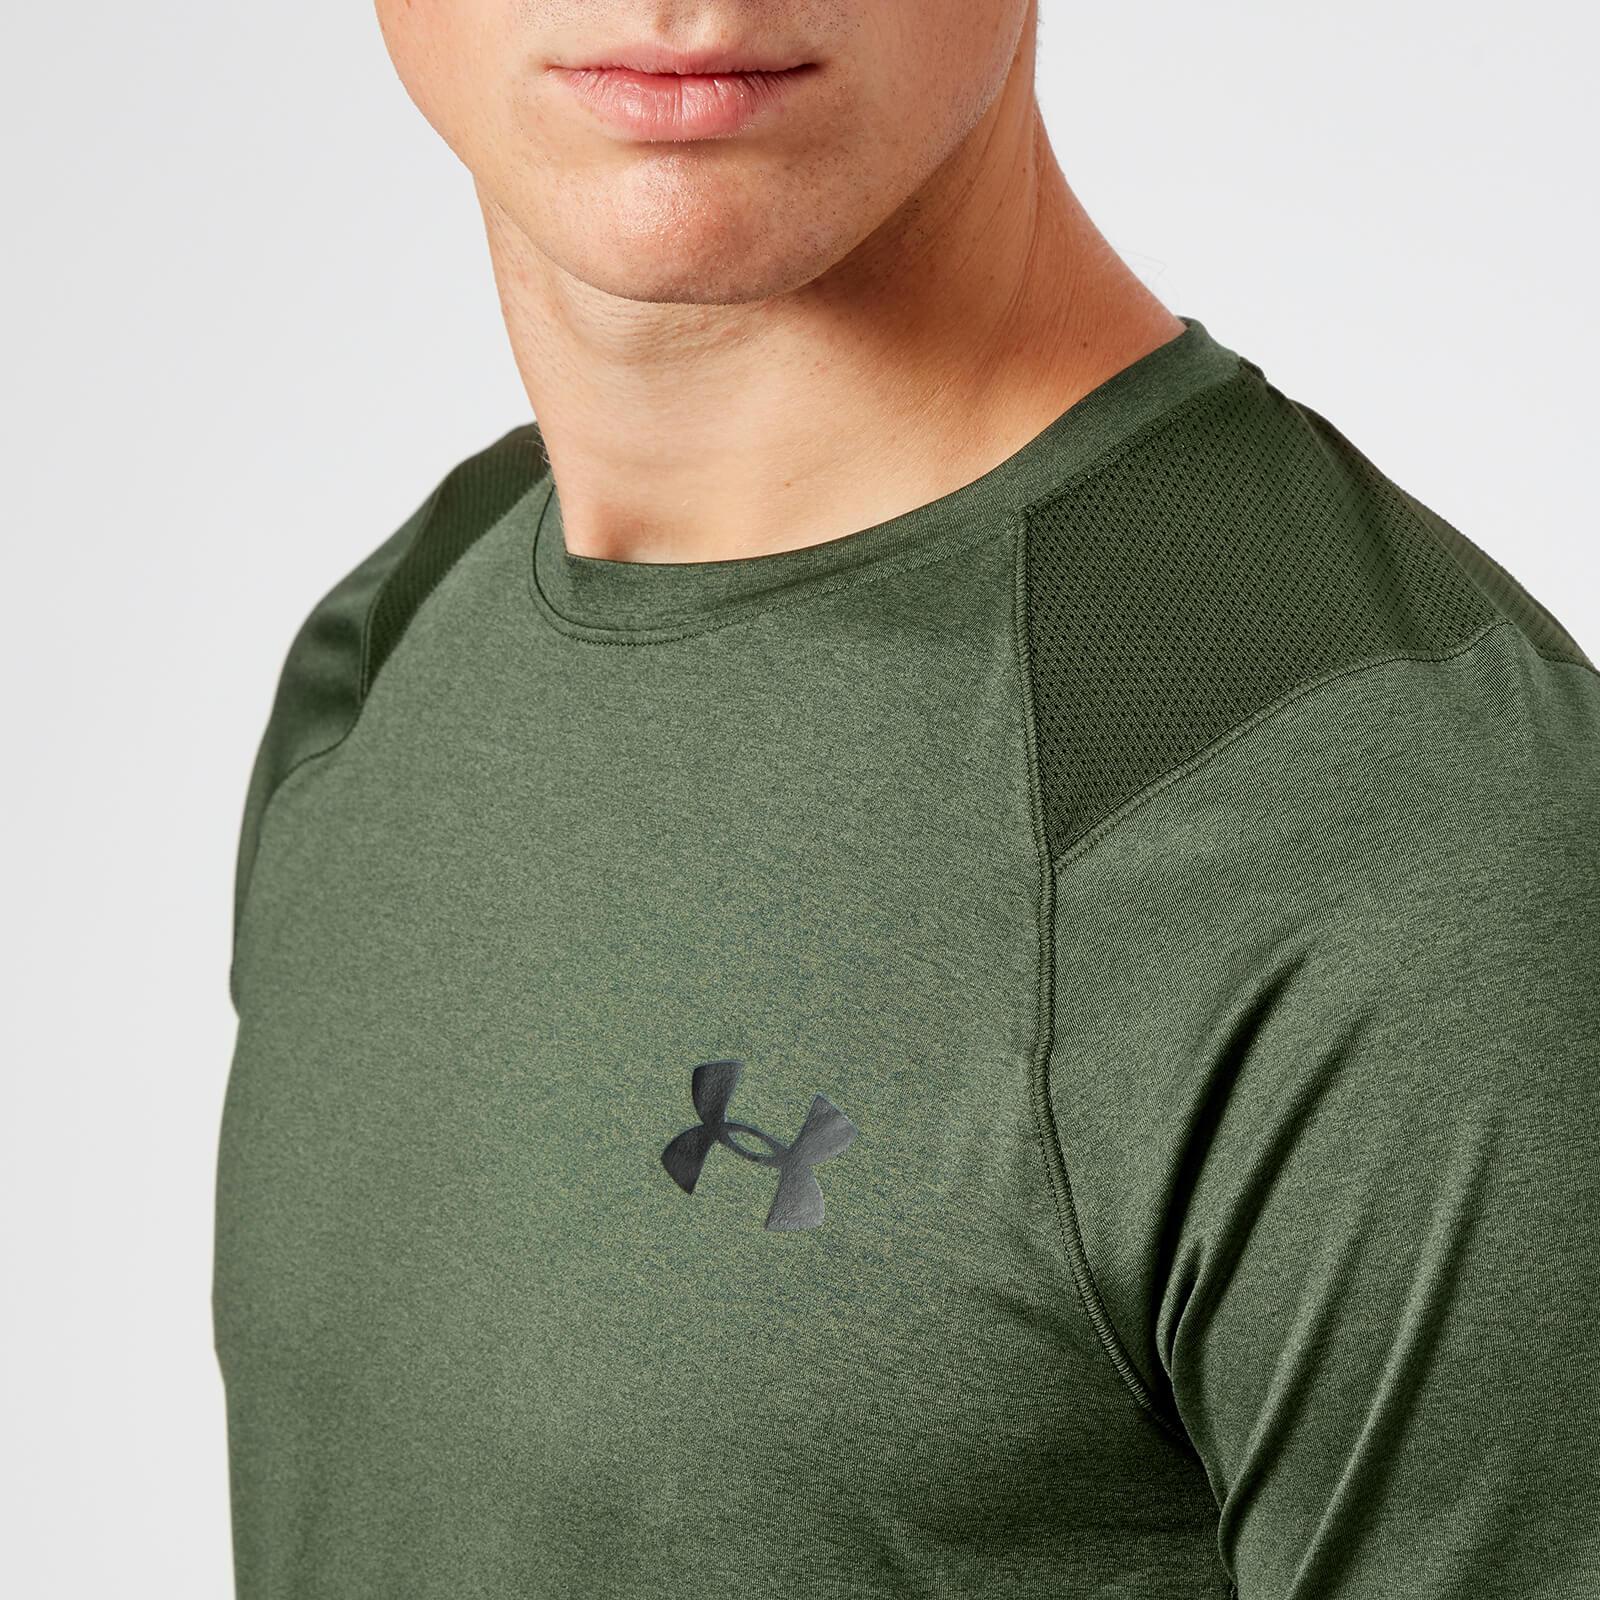 Under Armour Men’s Long Sleeve Shirt MK-1 Sport Tee T-Shirt Herren 1306431-001 